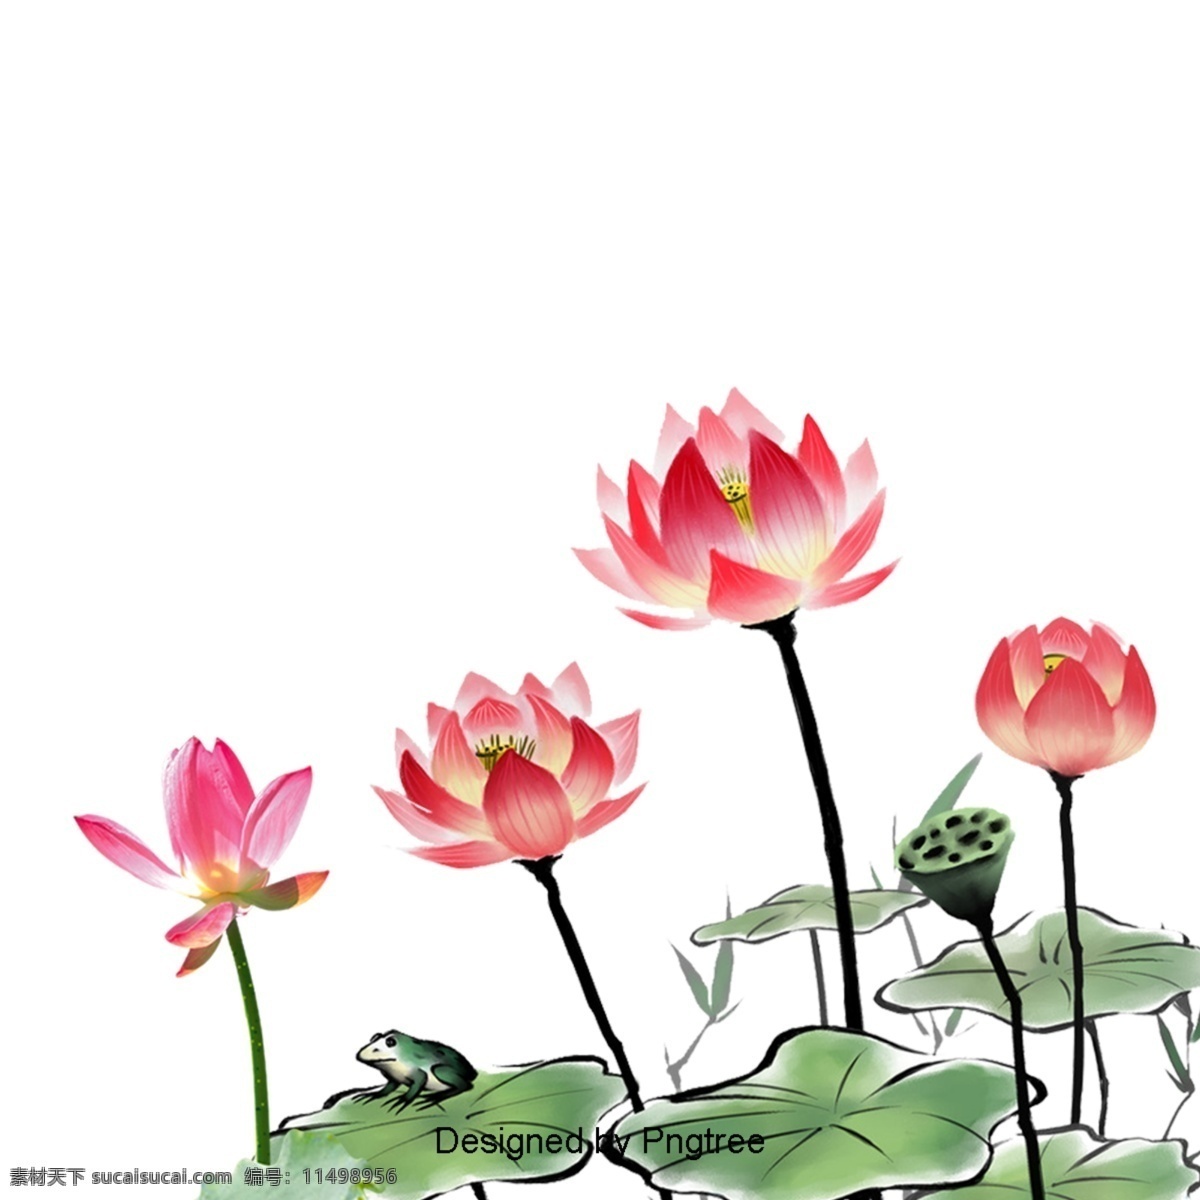 简单 卡通 花卉 装饰 图案 手绘 极 简 色彩 图形设计 材料 唯美 主义 自然